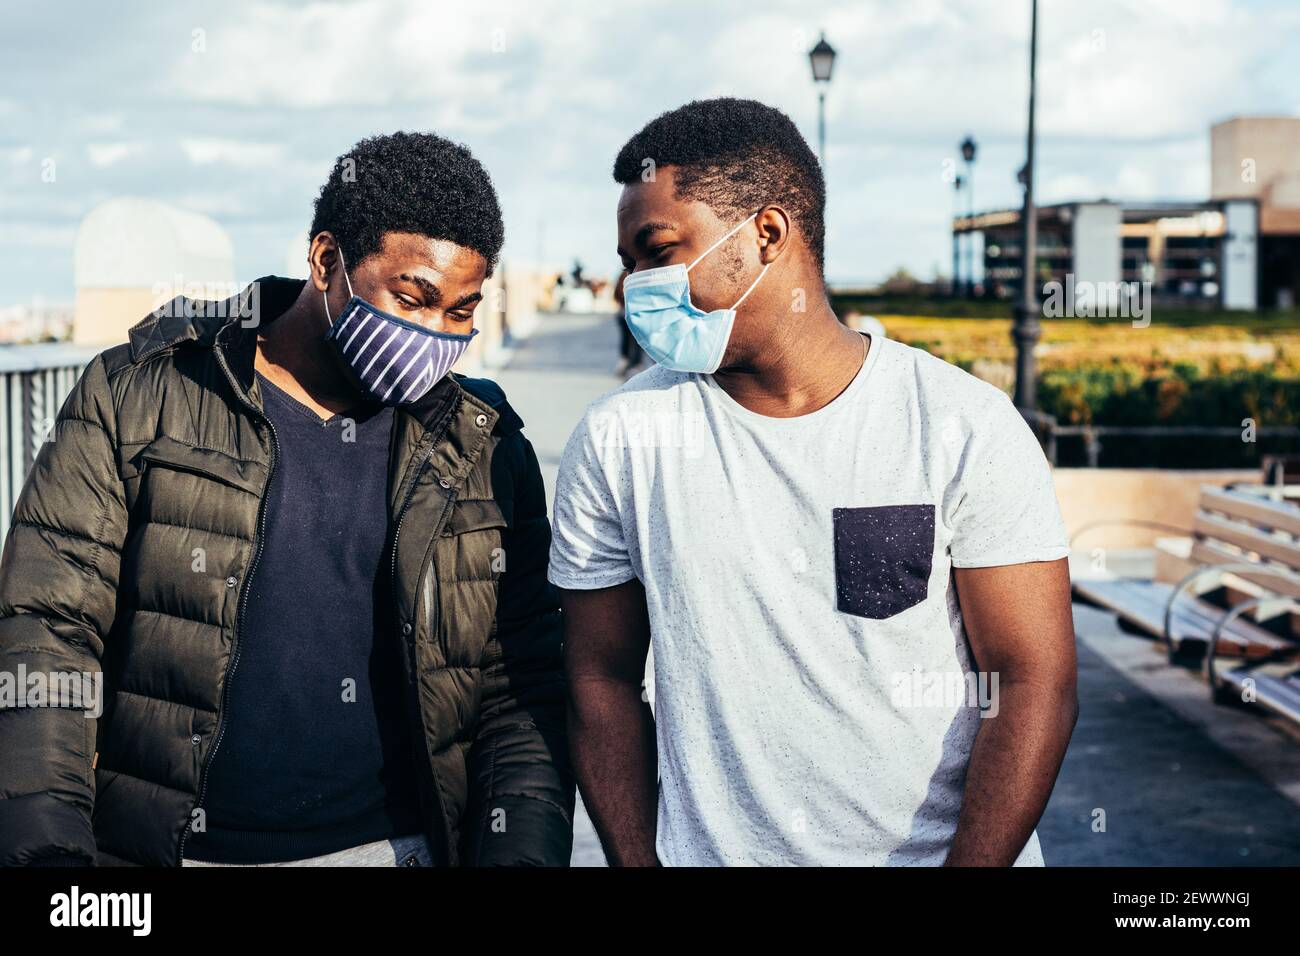 Ritratto di due amici afro-americani con maschera facciale che si divertono in uno spazio urbano. Foto Stock